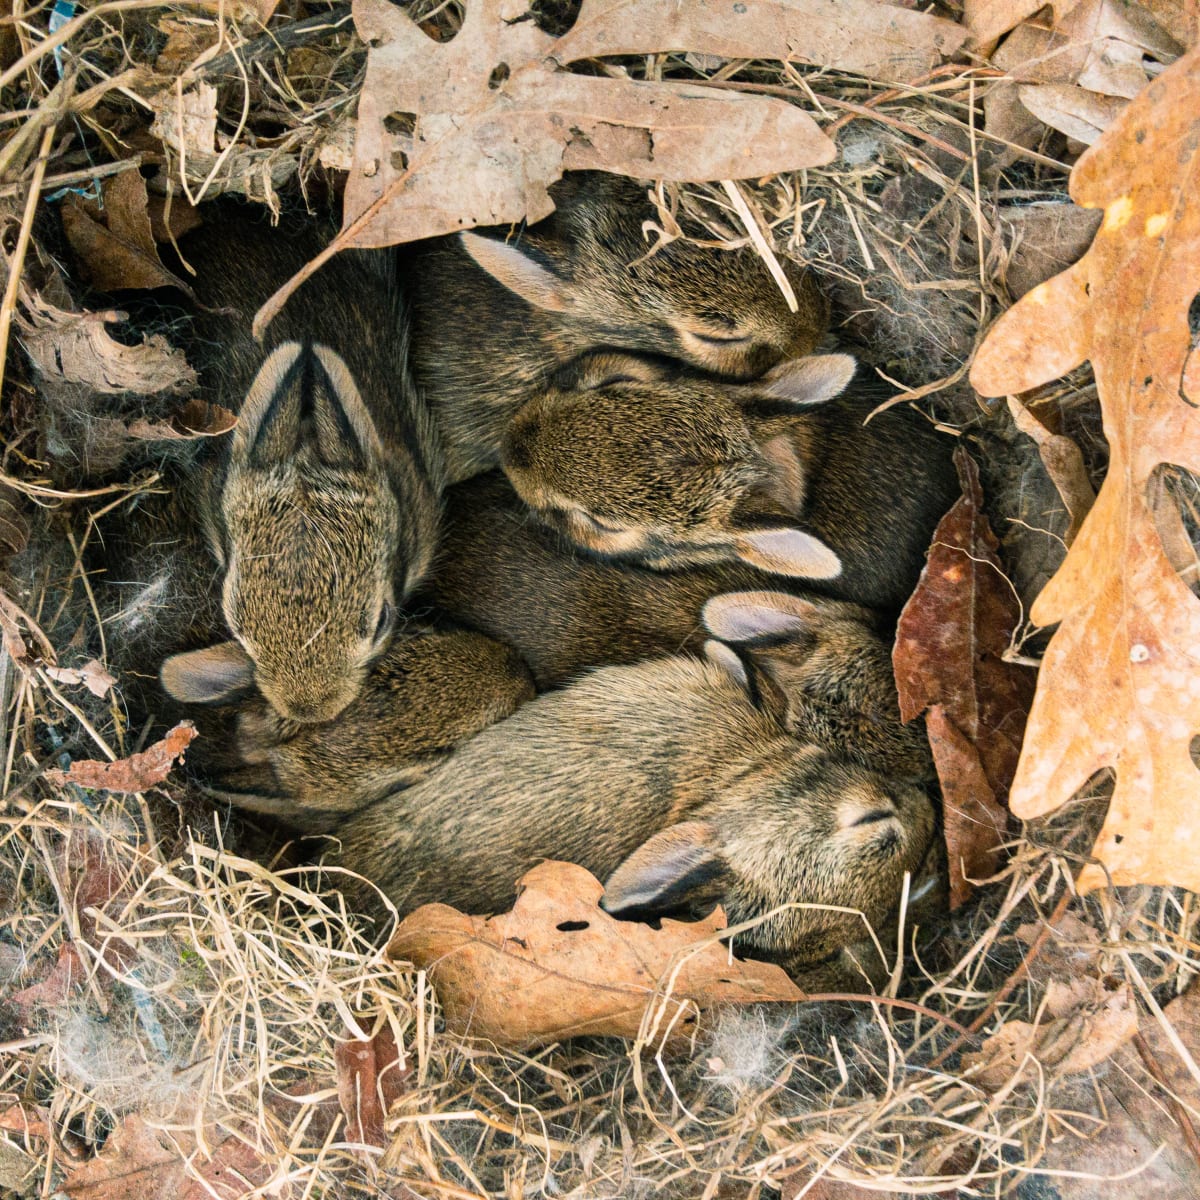 Bunny Nest by Susan Meyer  Image: Bunny Nest by Susan Meyer